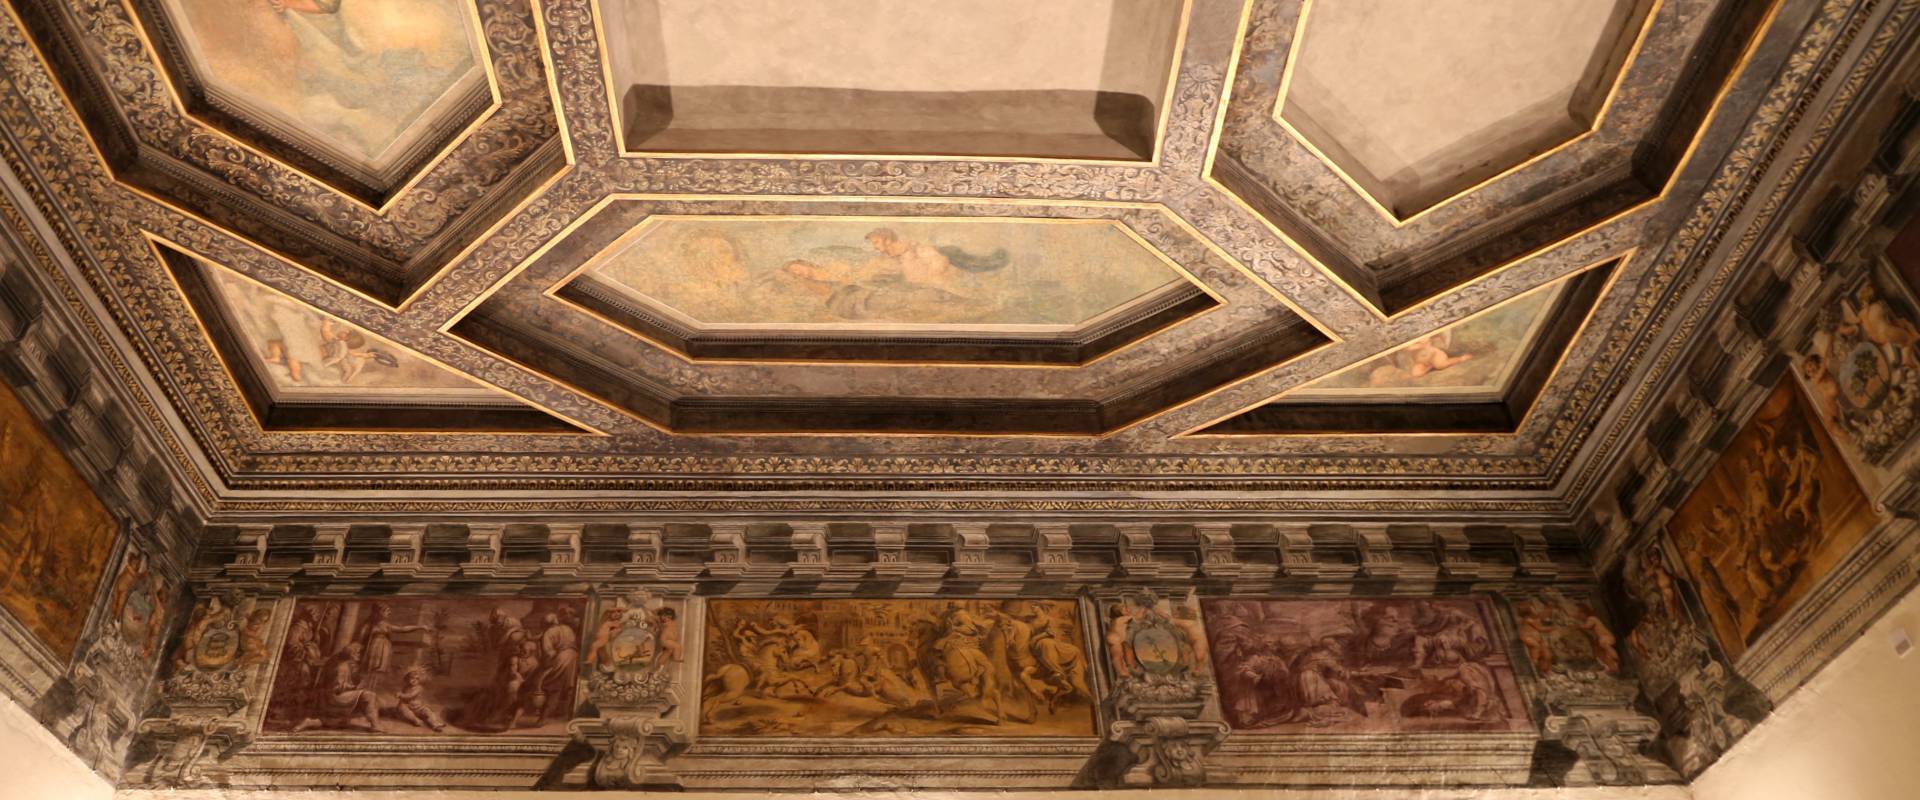 Gualtieri, palazzo bentivoglio, sala di icaro, fregio con storie di roma da tito livio, 1600-05 circa, 02 foto di Sailko